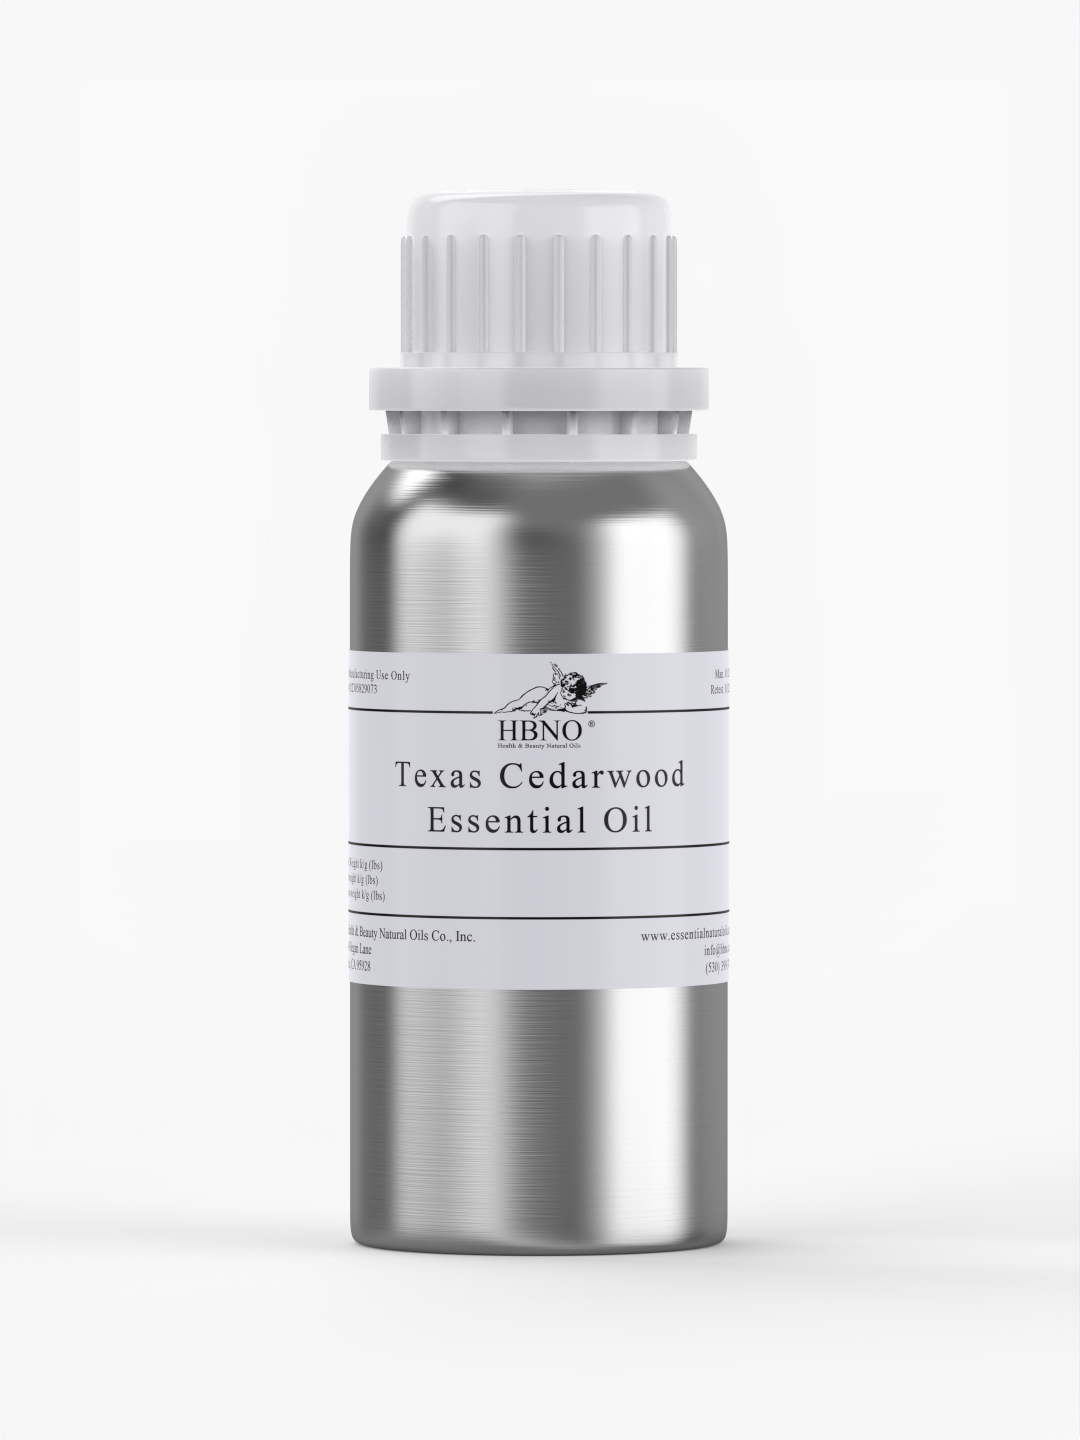 Cedarwood Texas Essential Oil